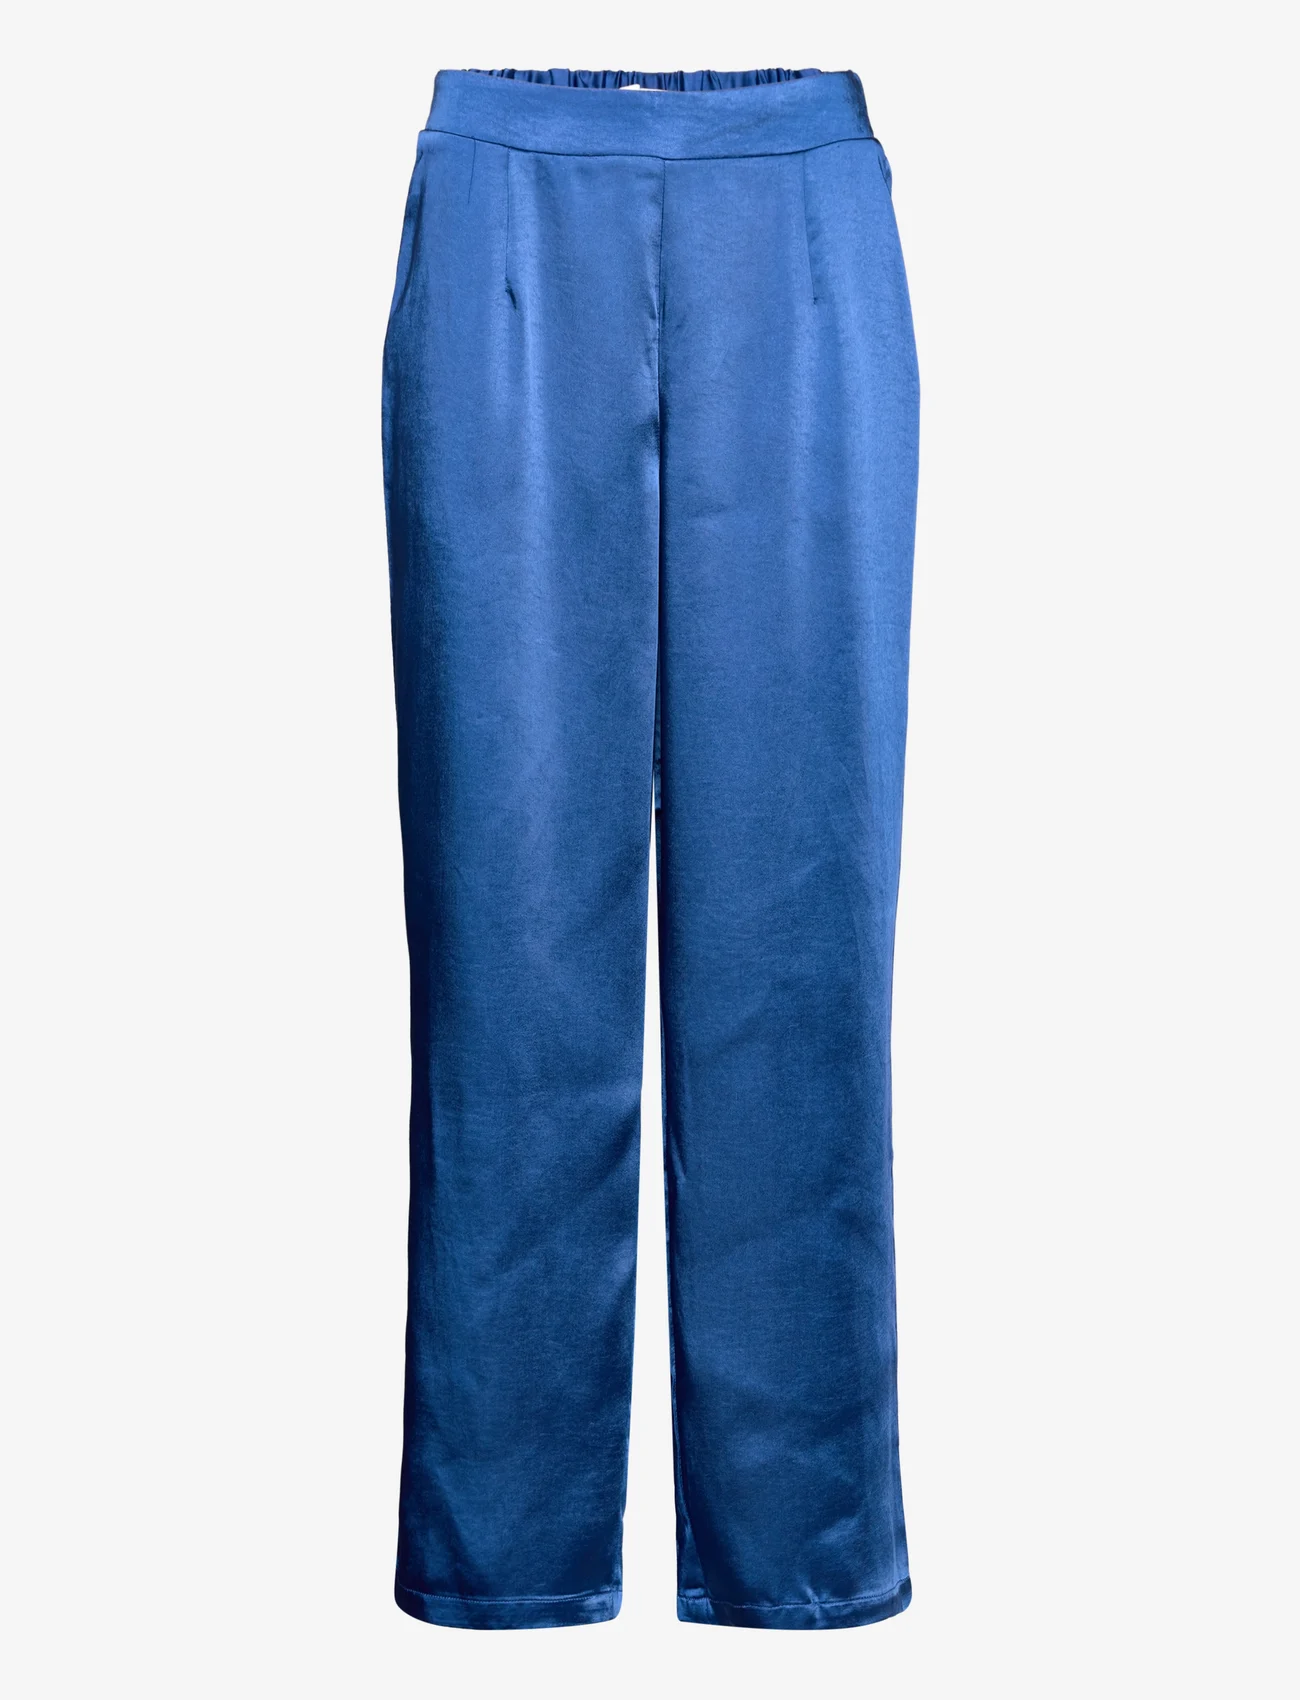 Lollys Laundry - Henry Pants - bukser med brede ben - neon blue - 0